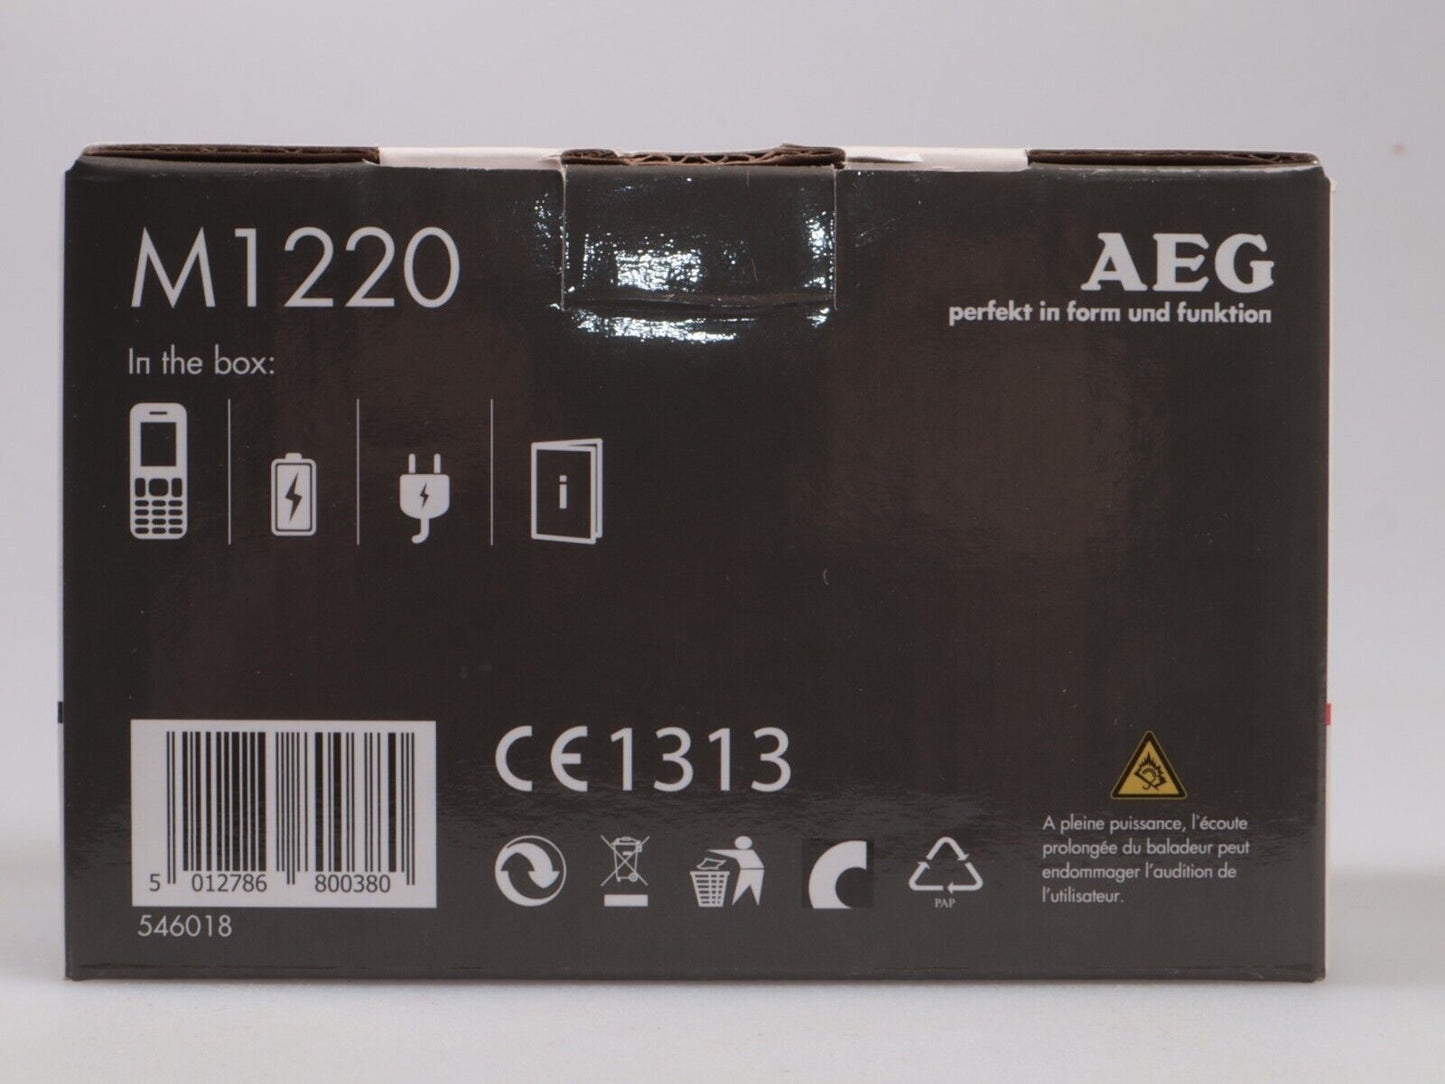 VOXTEL M1220 | AEG | Mobiele telefoon met grote knop | Nieuw in geopende doos 